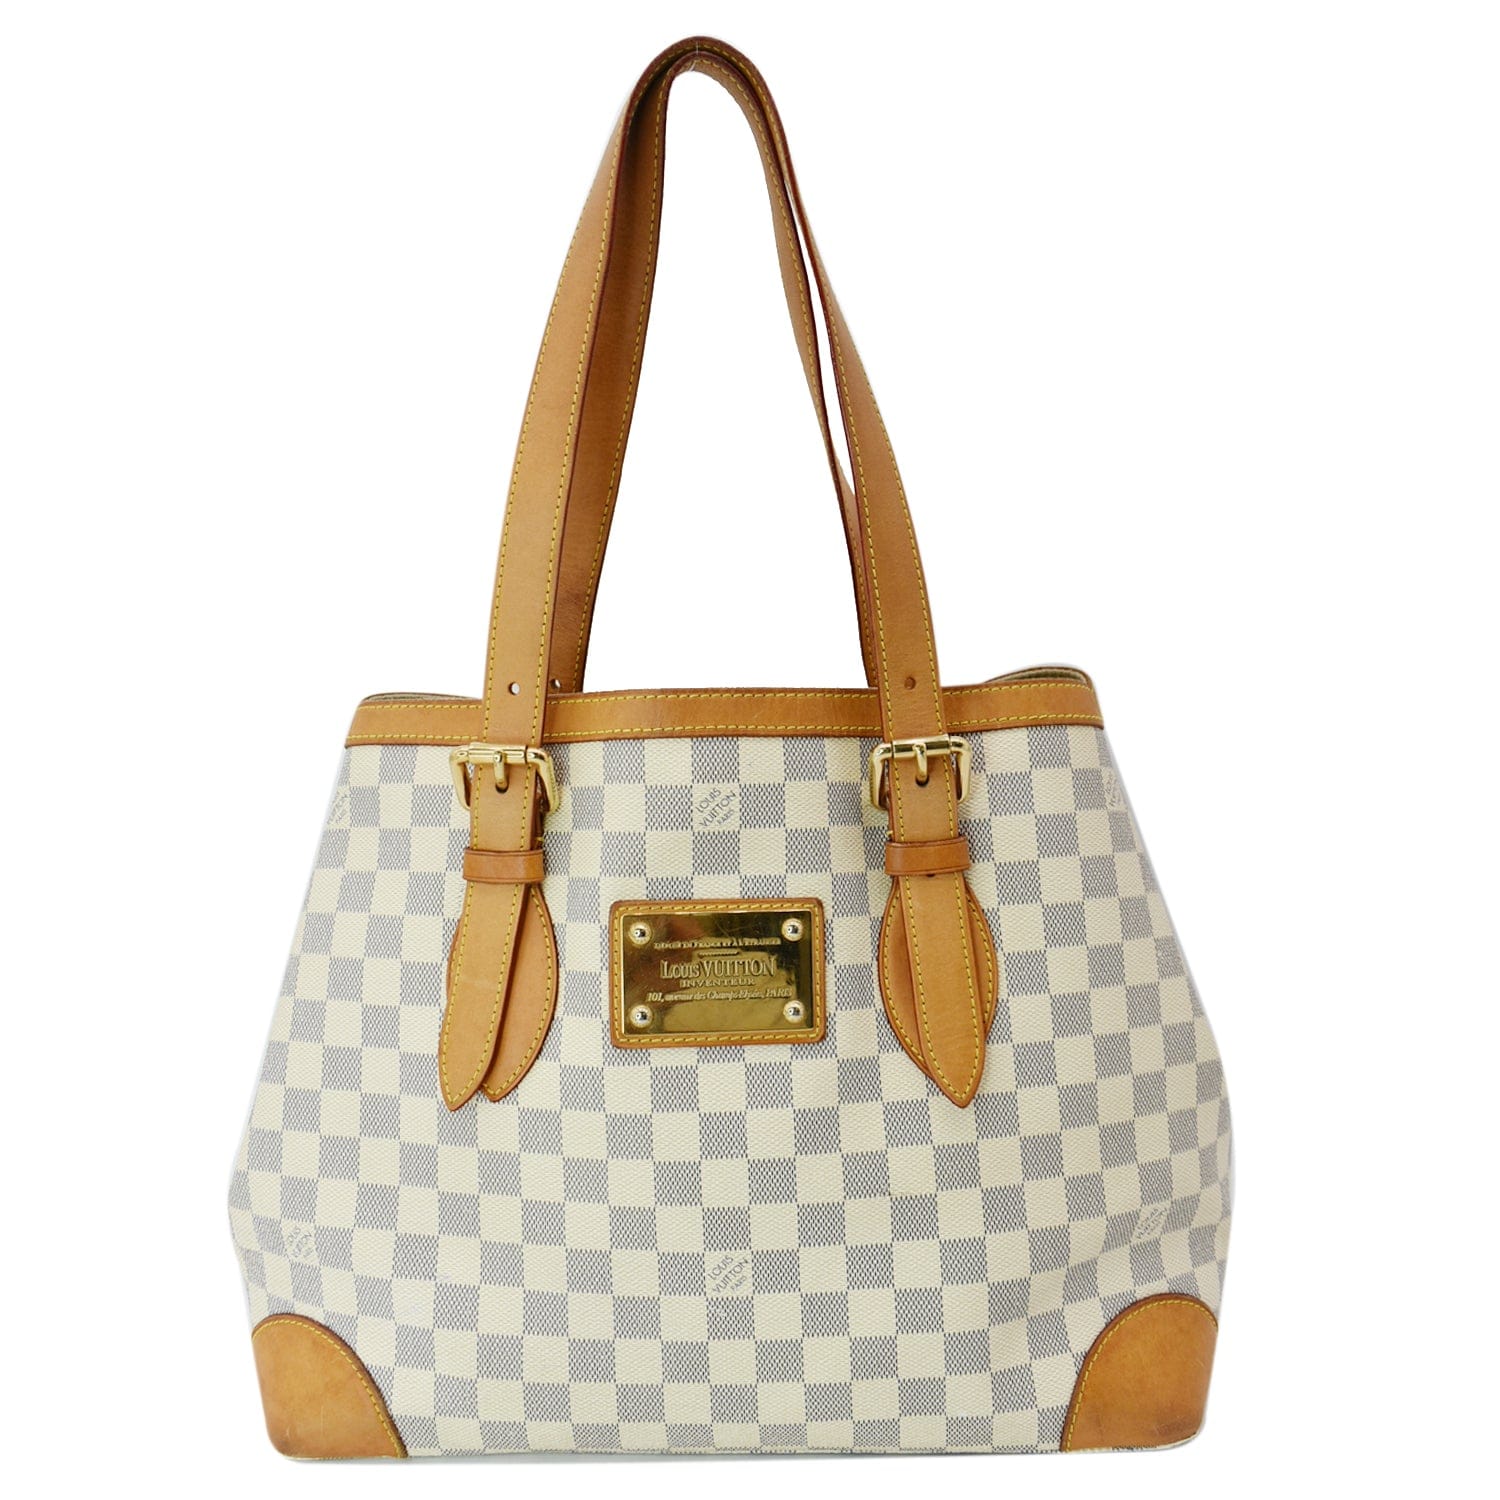 White Louis Vuitton Handbag -  UK